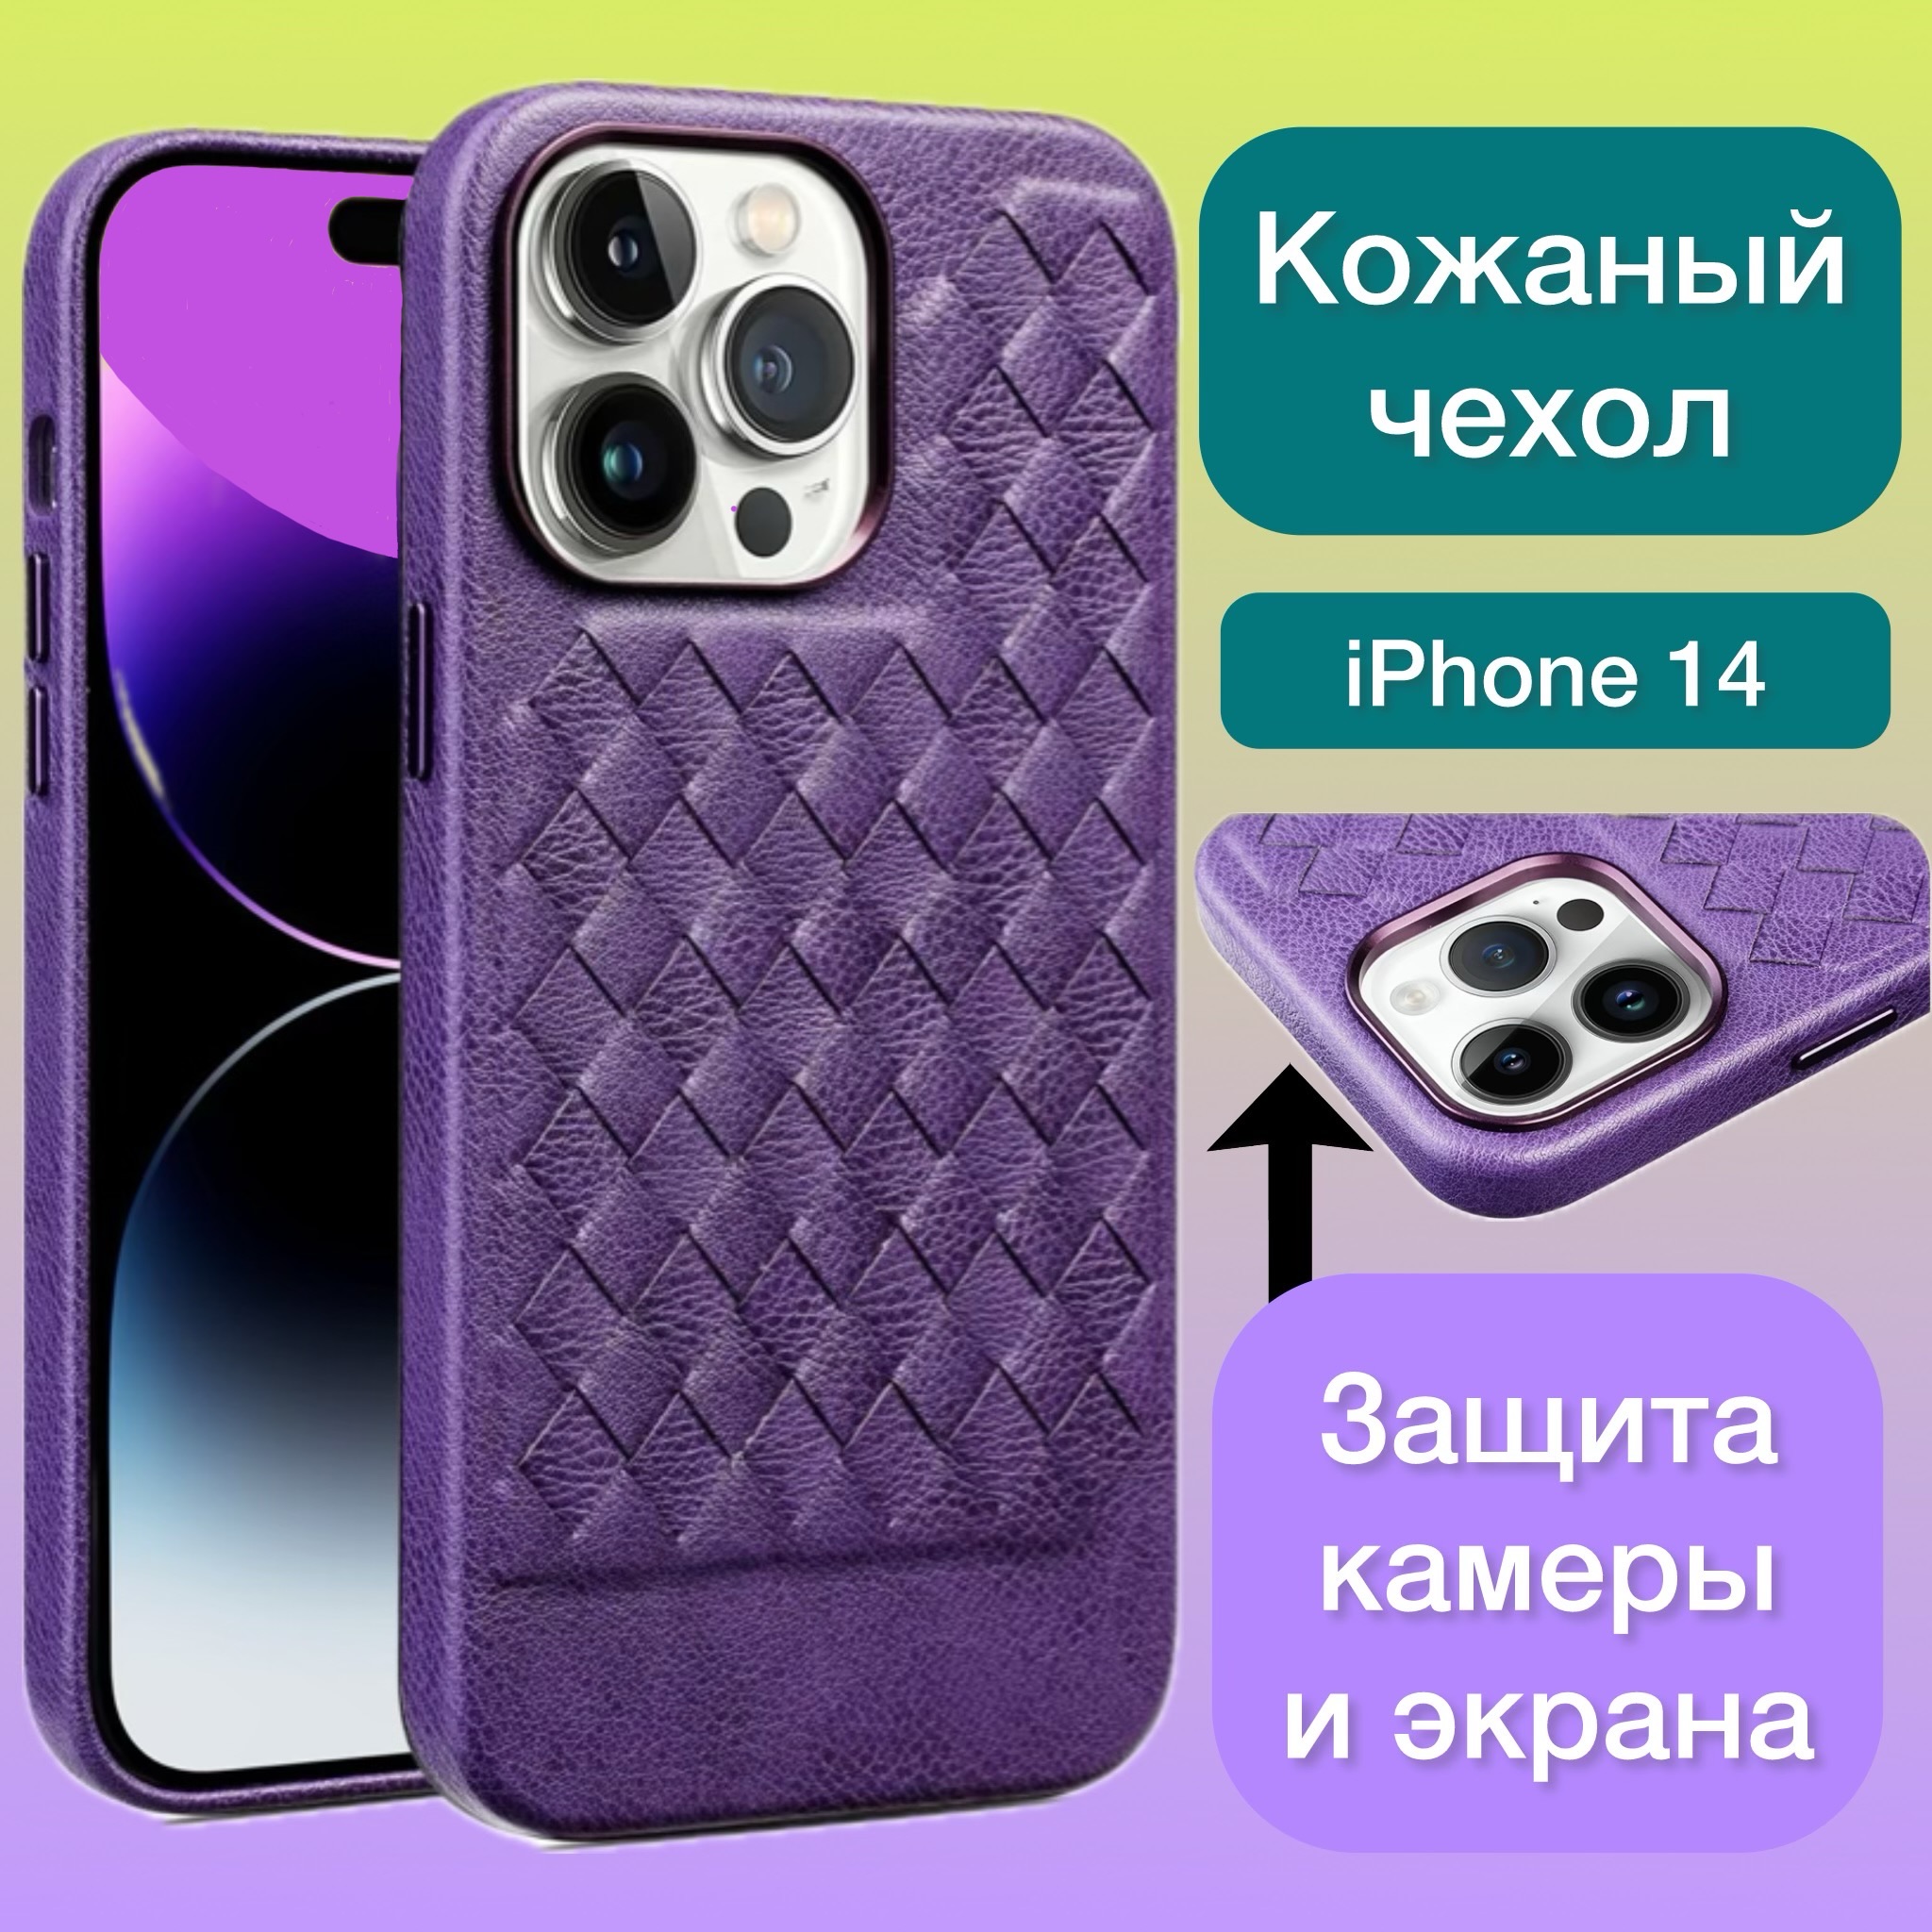 Кожаный чехол на iPhone 14 фиолетовый